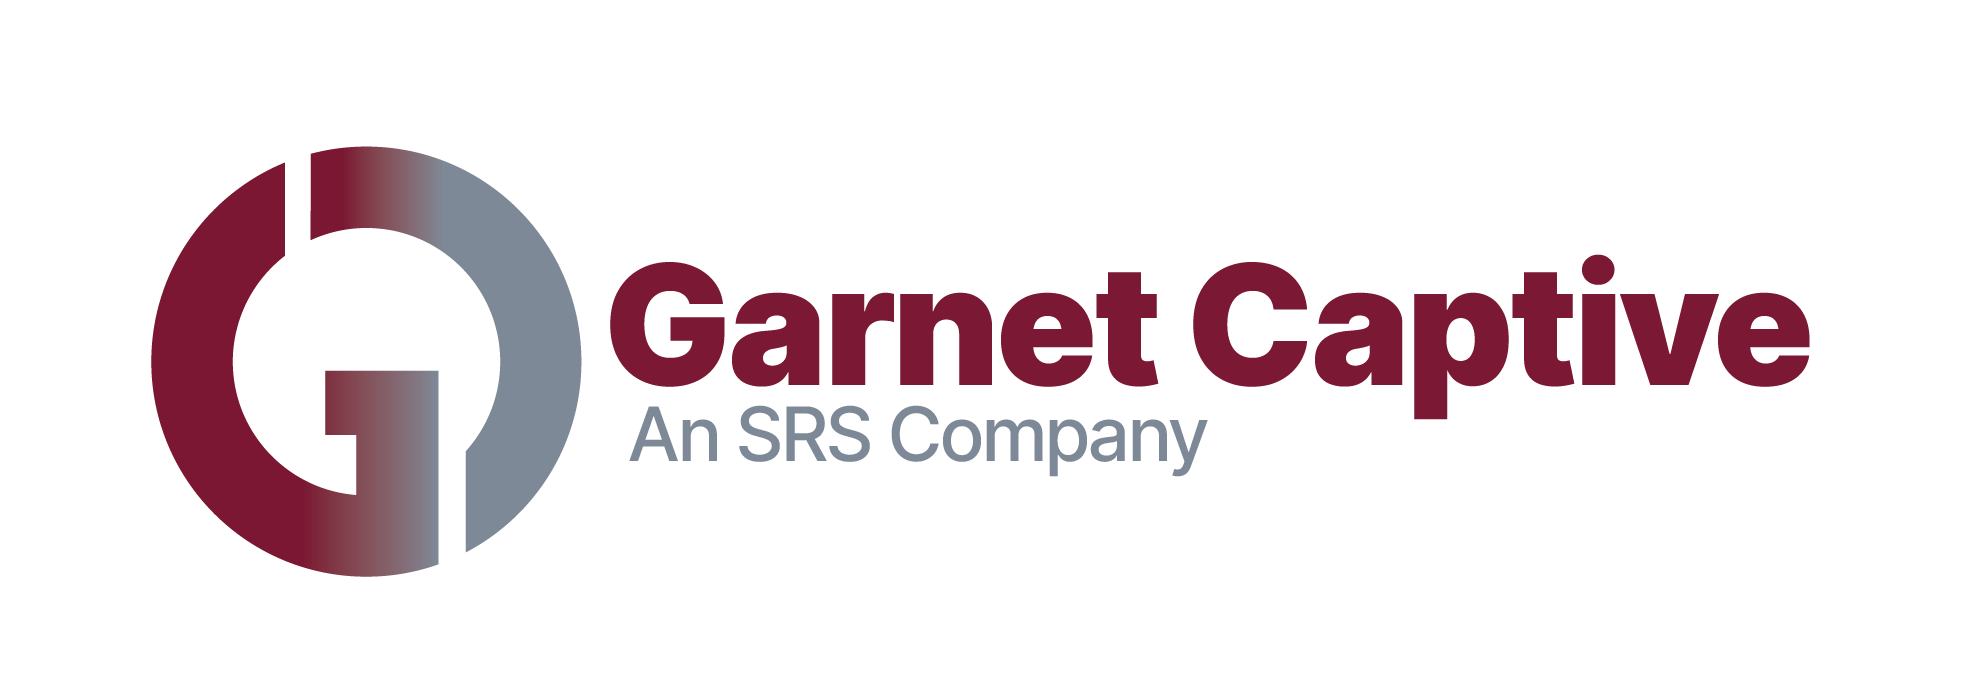 Garnet Captive